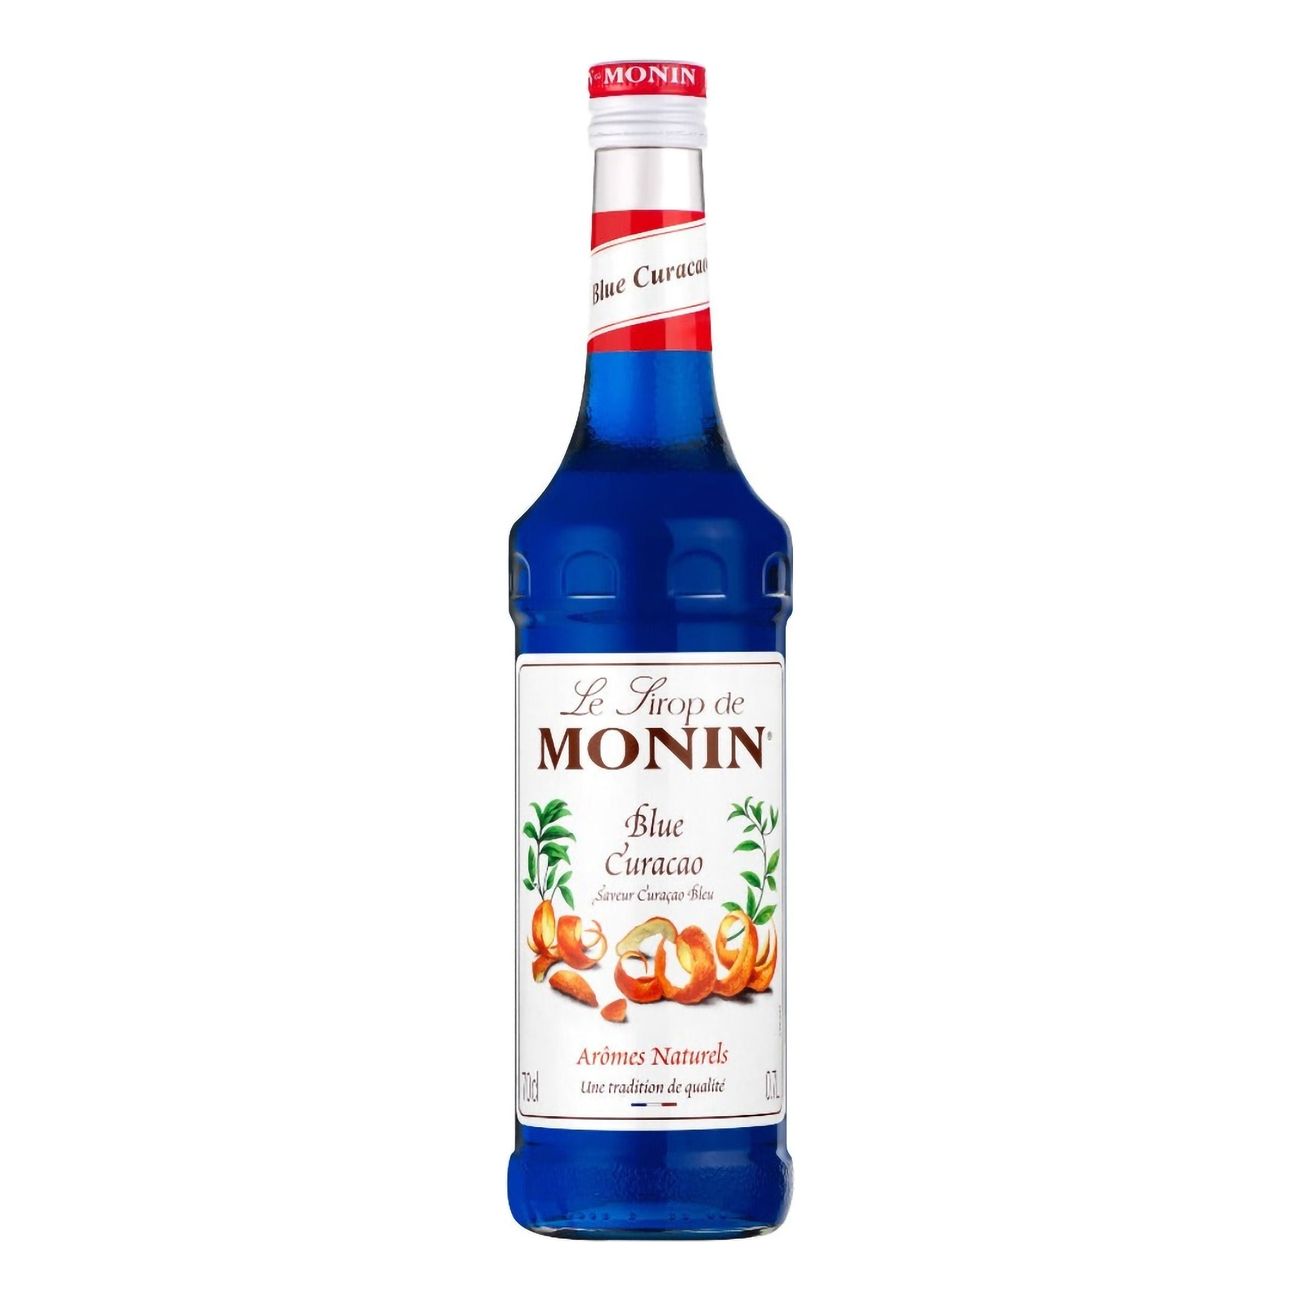 monin-blue-curacao-syrup-30437-2